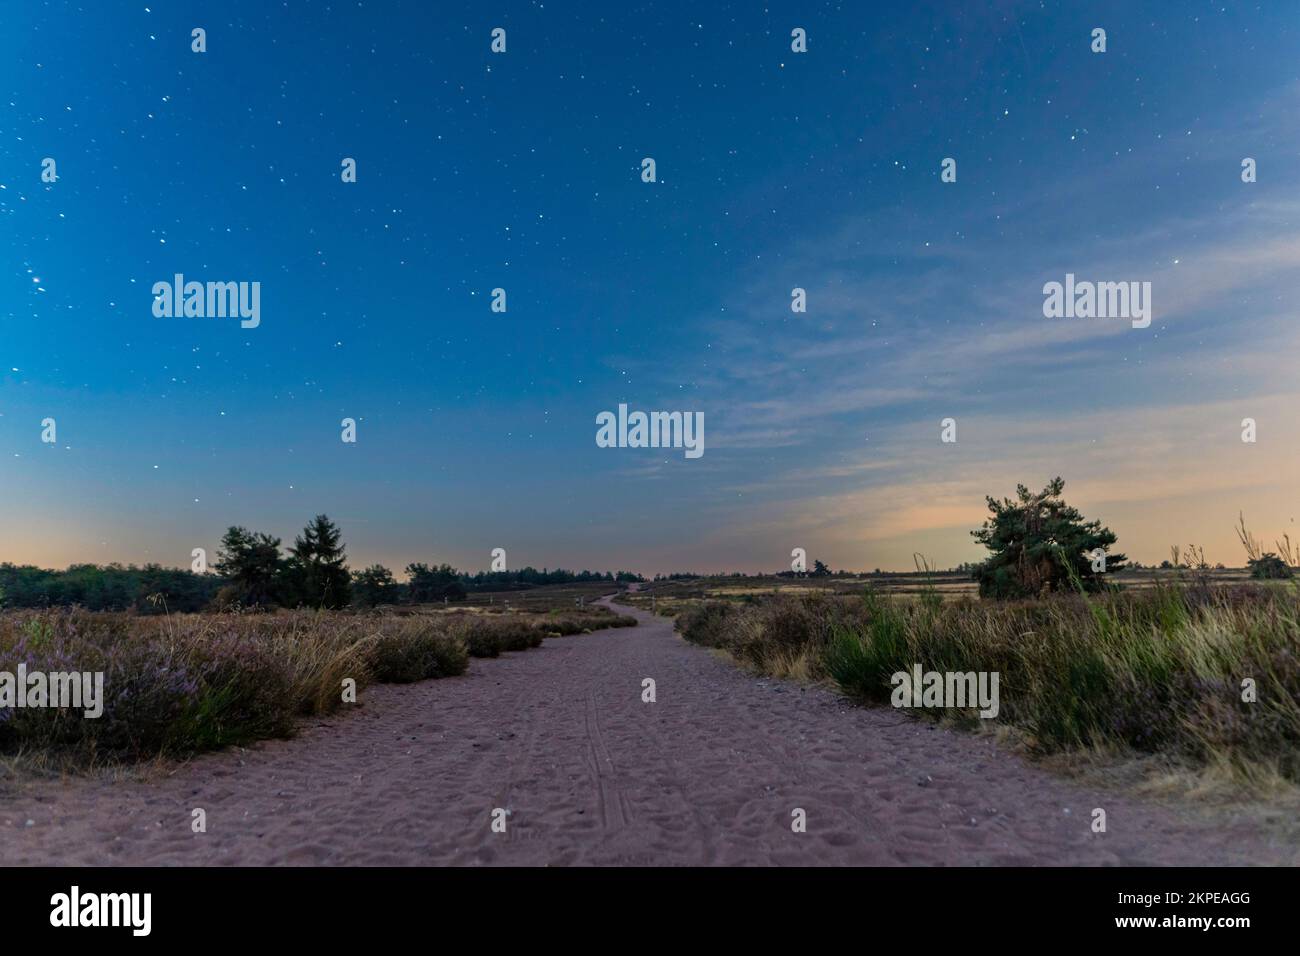 Ein wunderschöner Blick auf einen Wanderweg auf dem Feld am Abend mit frühen Sternen am Himmel Stockfoto